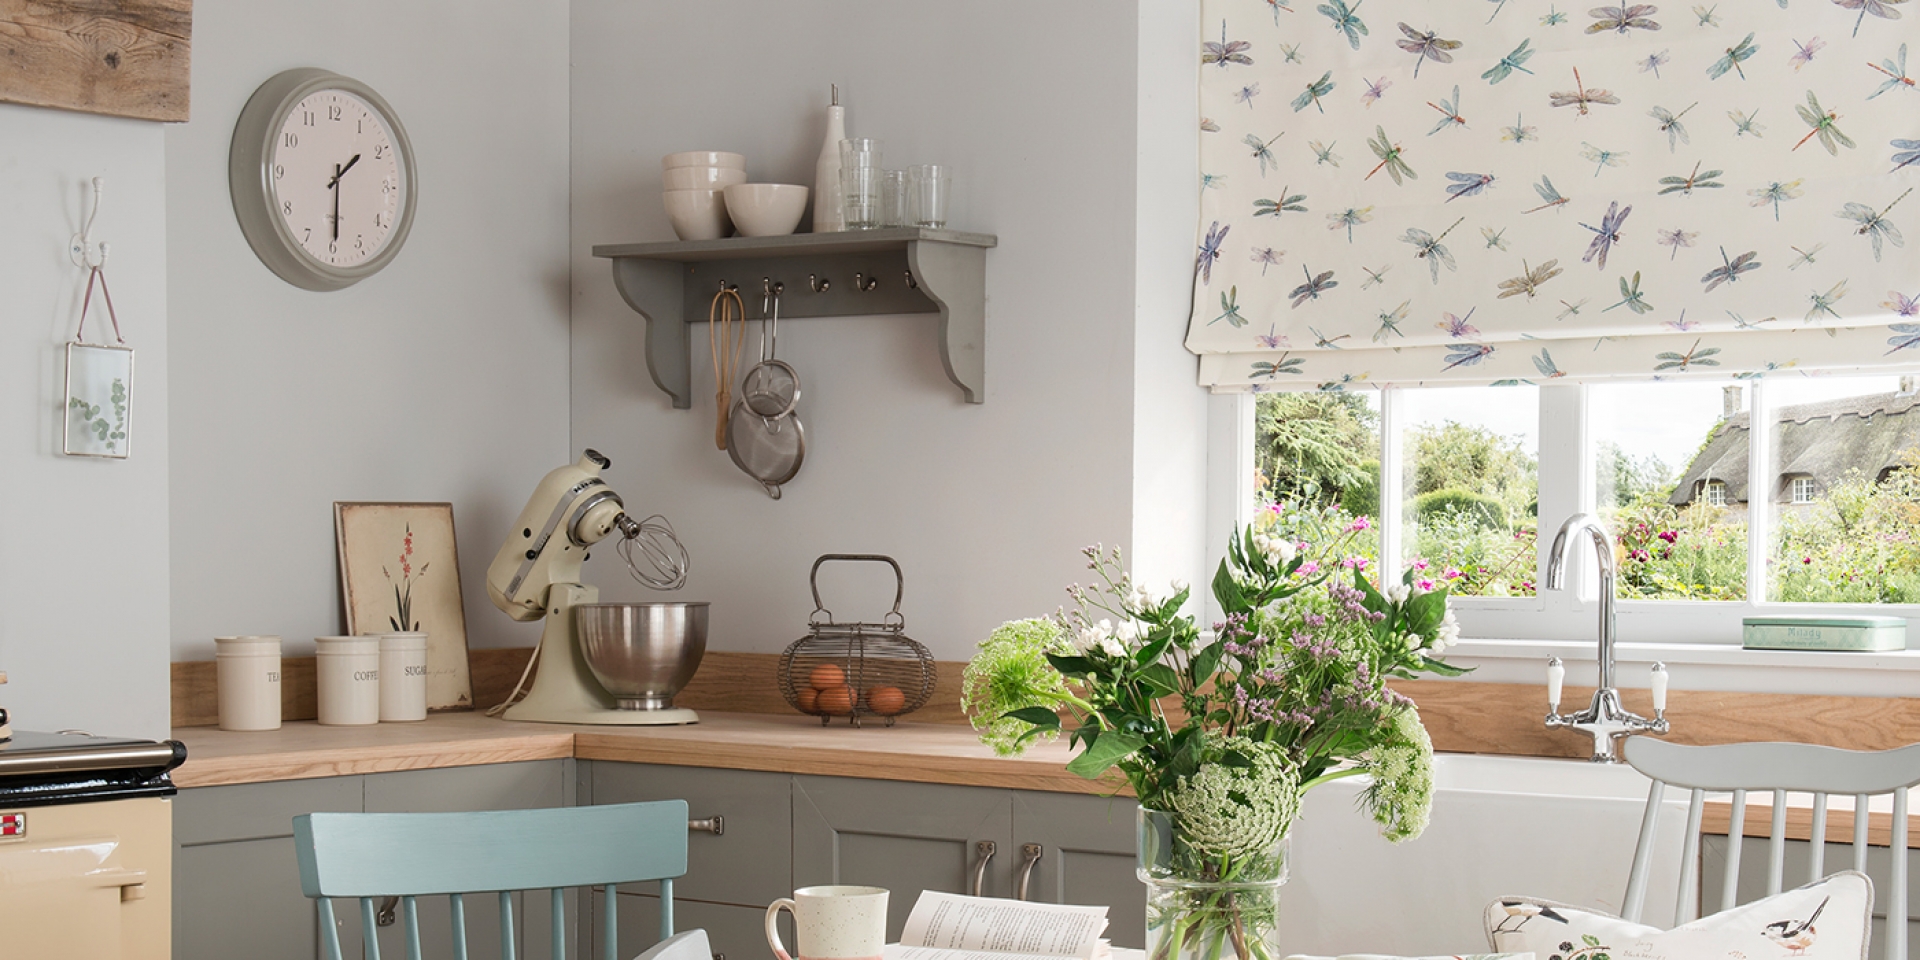 Küchenfenster mit weißem Raffrollo, verziert mit blauen, violetten, grünen und orangen Libellen-Muster.